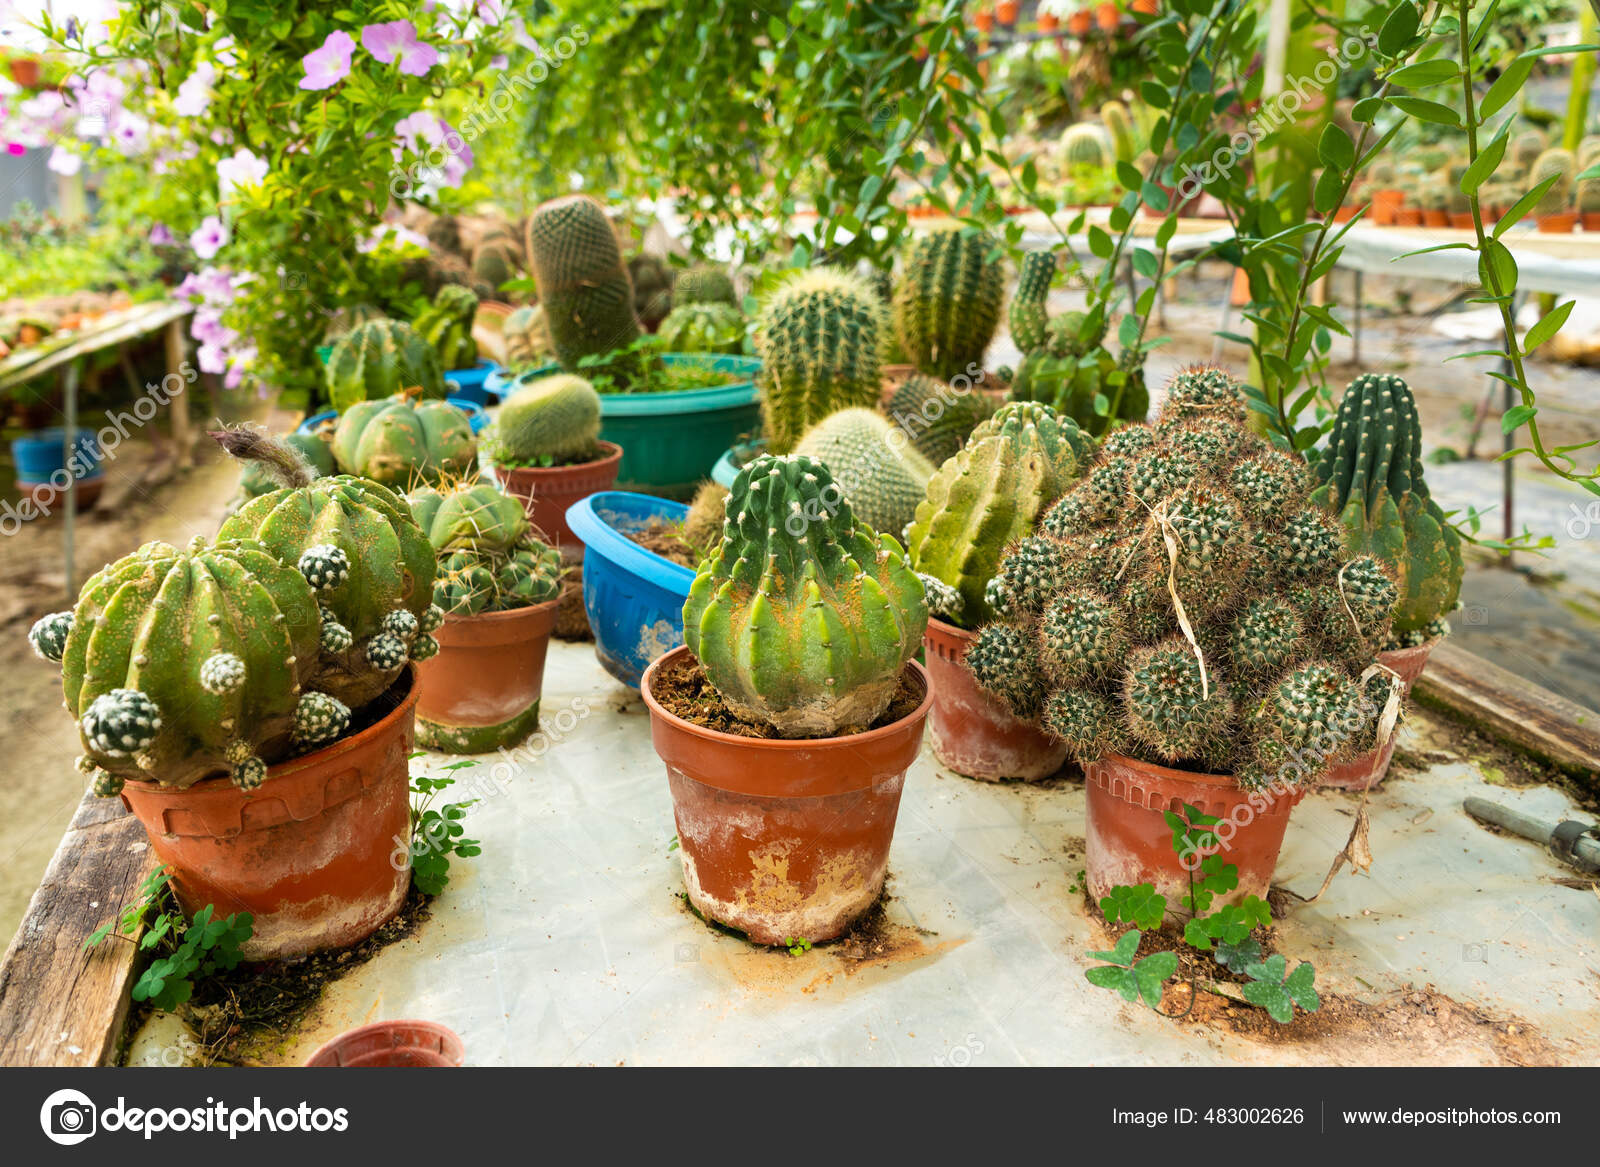 Decorative Pots for Succulents & Cacti